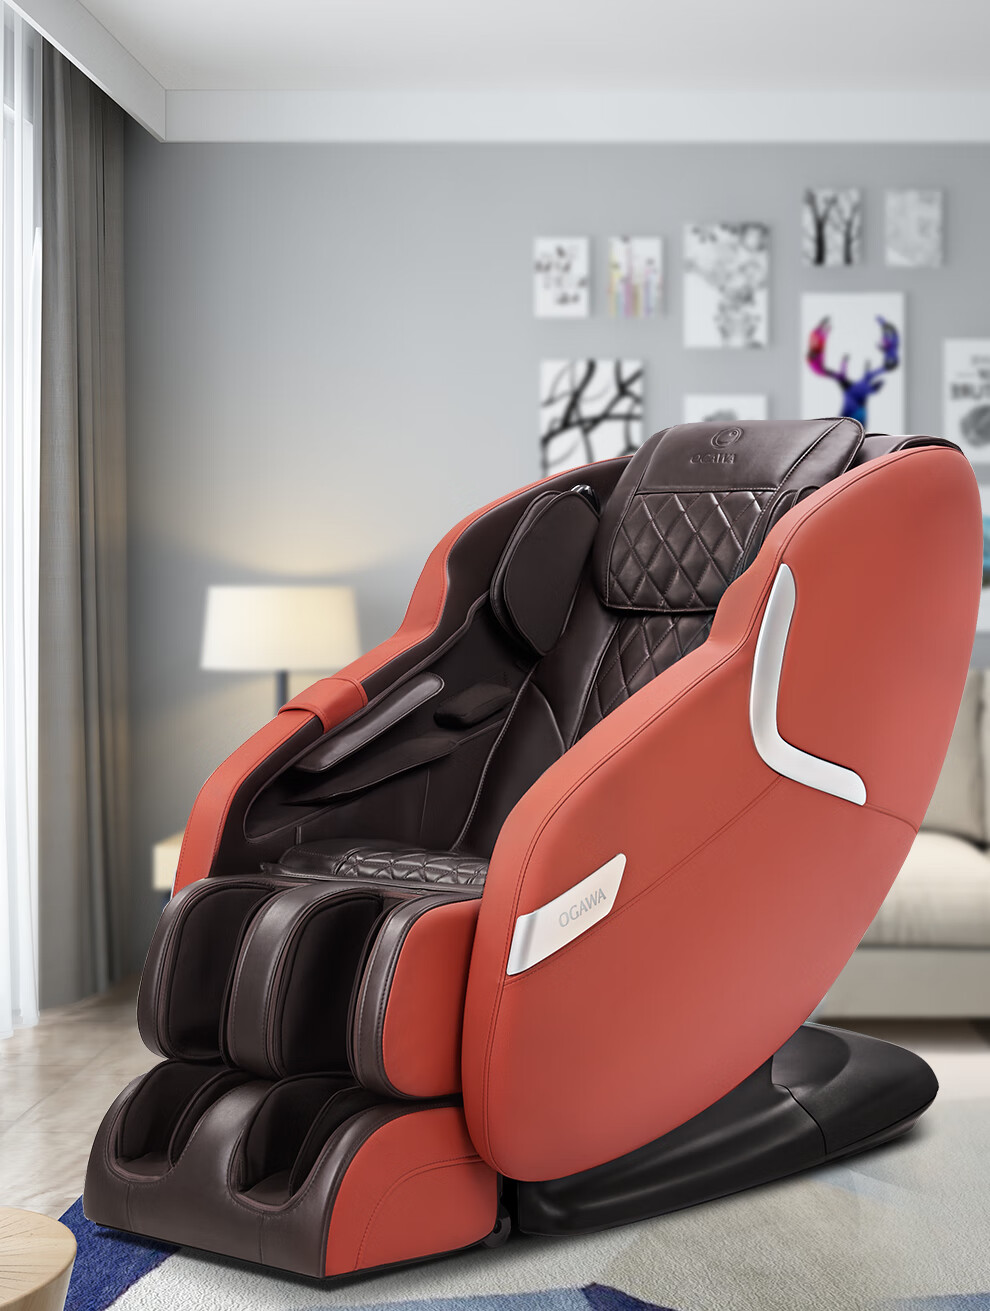 【上市集团】奥佳华OGAWA按摩椅家用全身电动按摩沙发椅多功能全自动按摩椅子精选推荐7106适享椅 优雅白